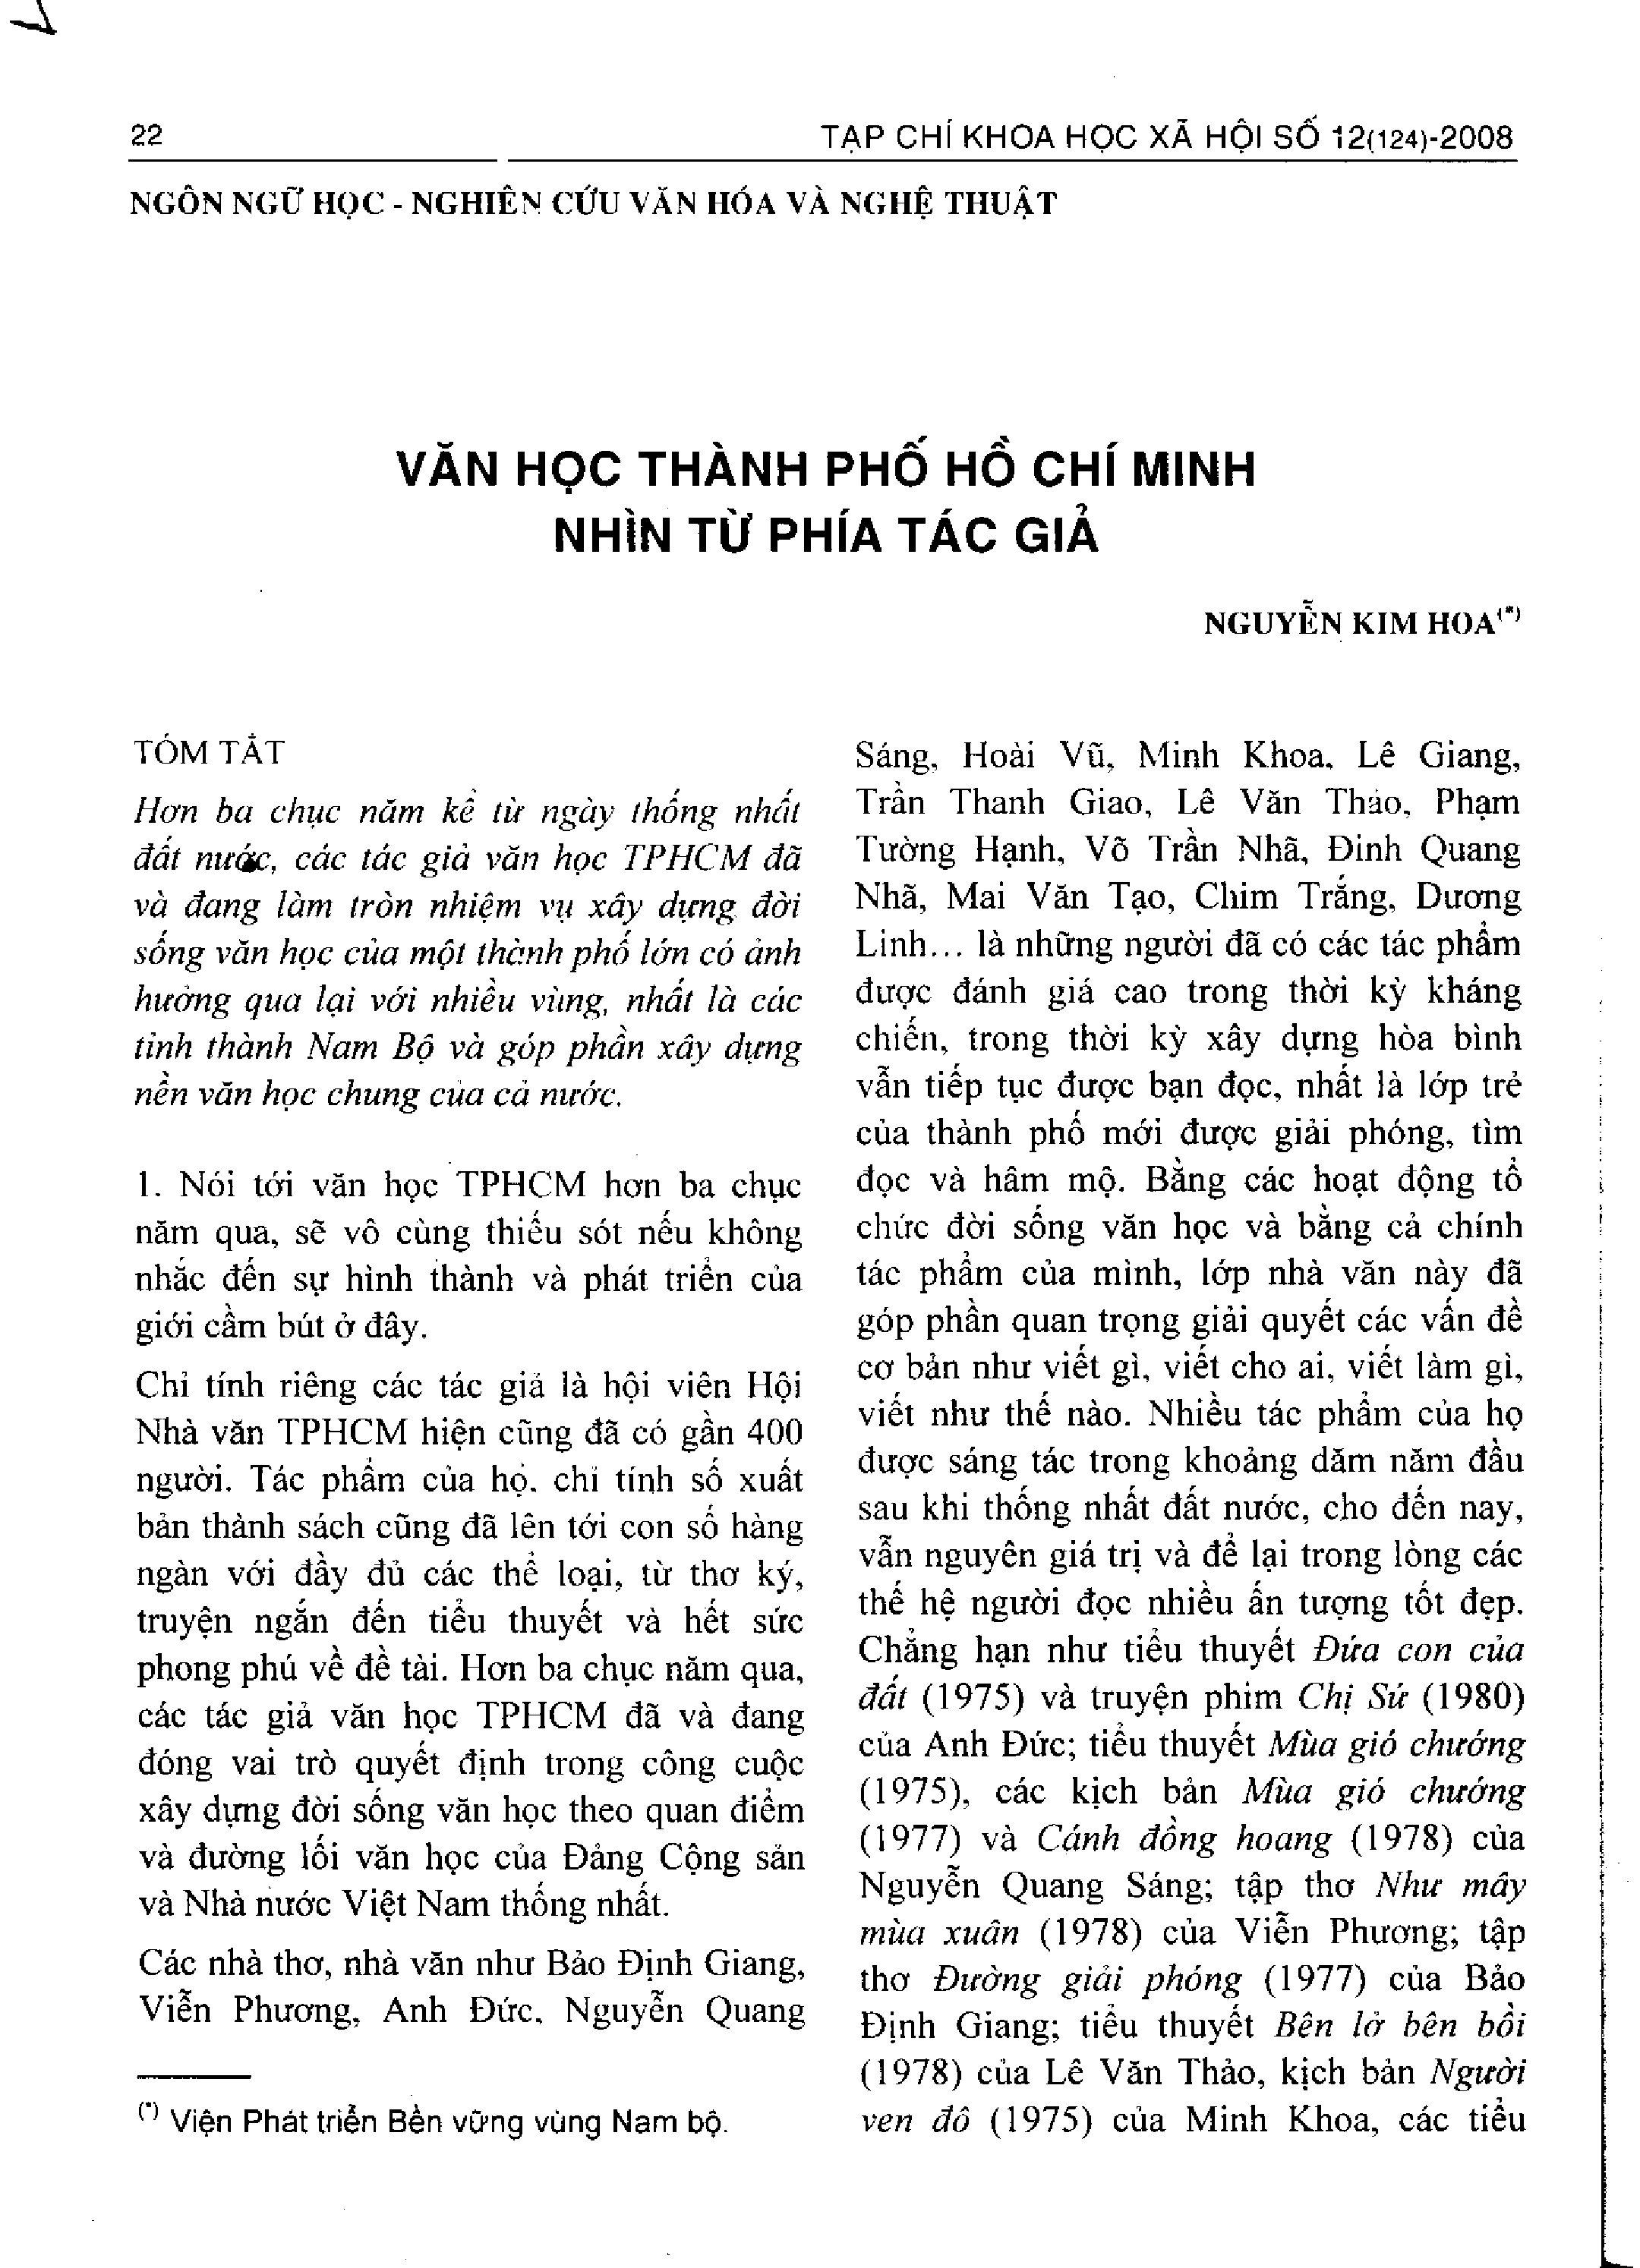 Văn học thành phố Hồ Chí Minh nhìn từ phía tác giả